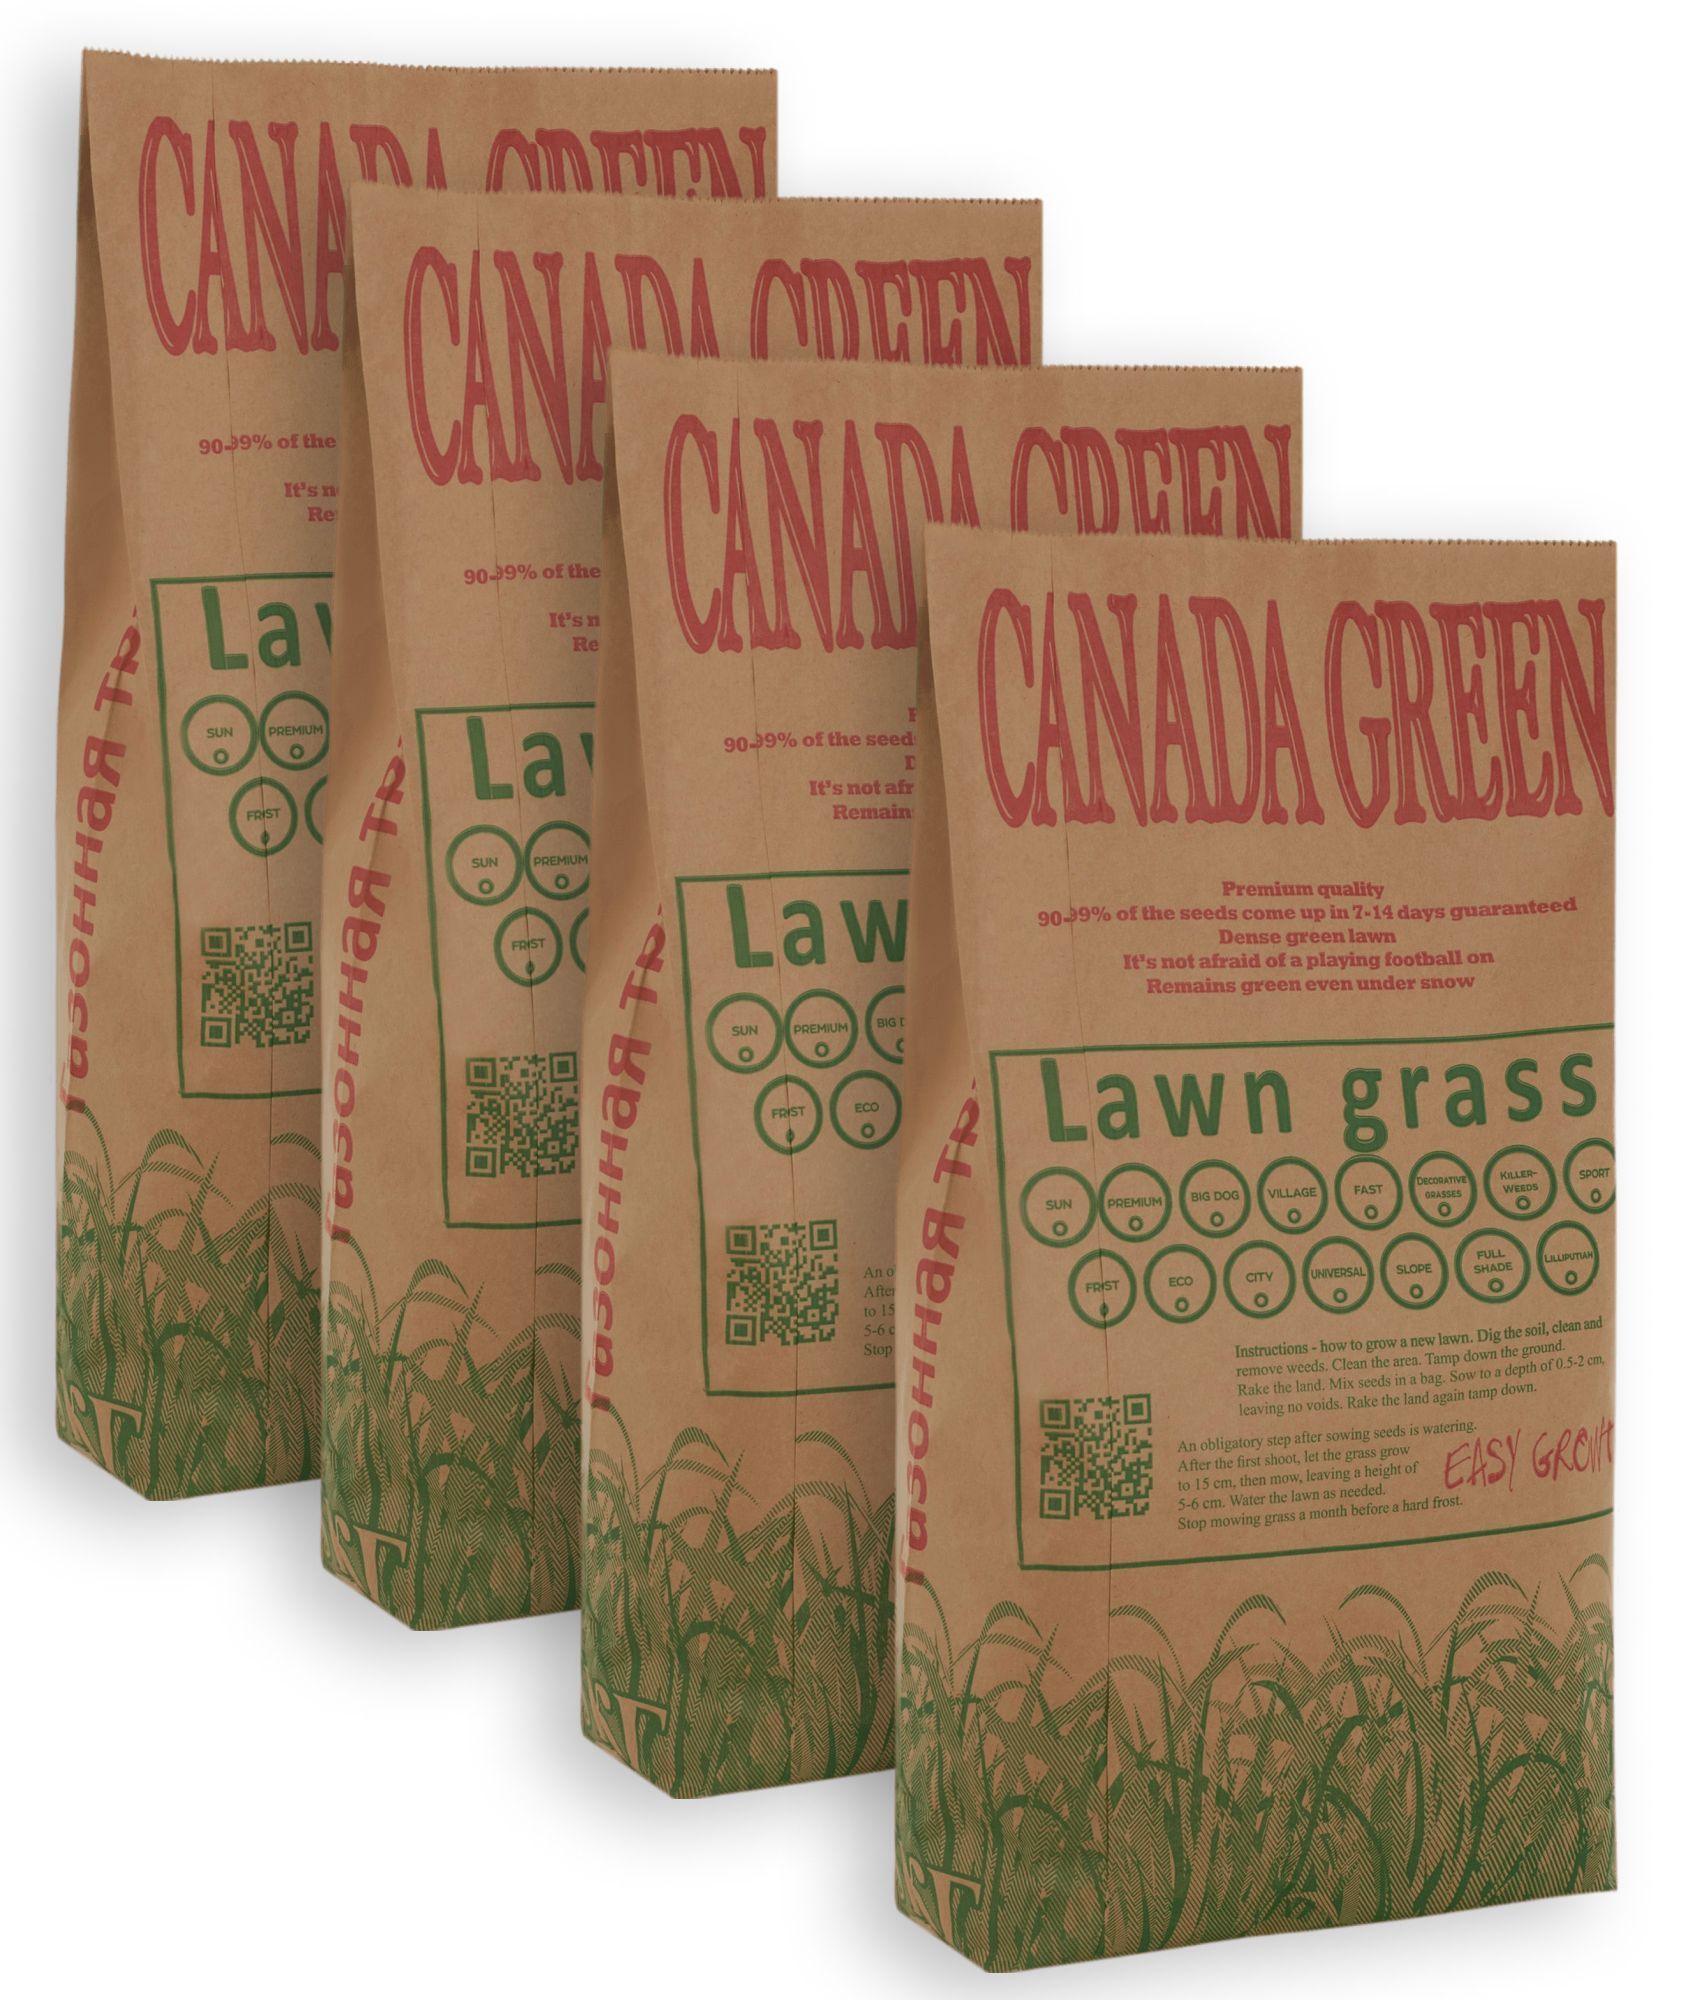 Газонная трава 20 кг. Канада Грин газонная трава. Газонная трава касторама. Канада Грин травоядное. Городской газон ленивый, 20кг.